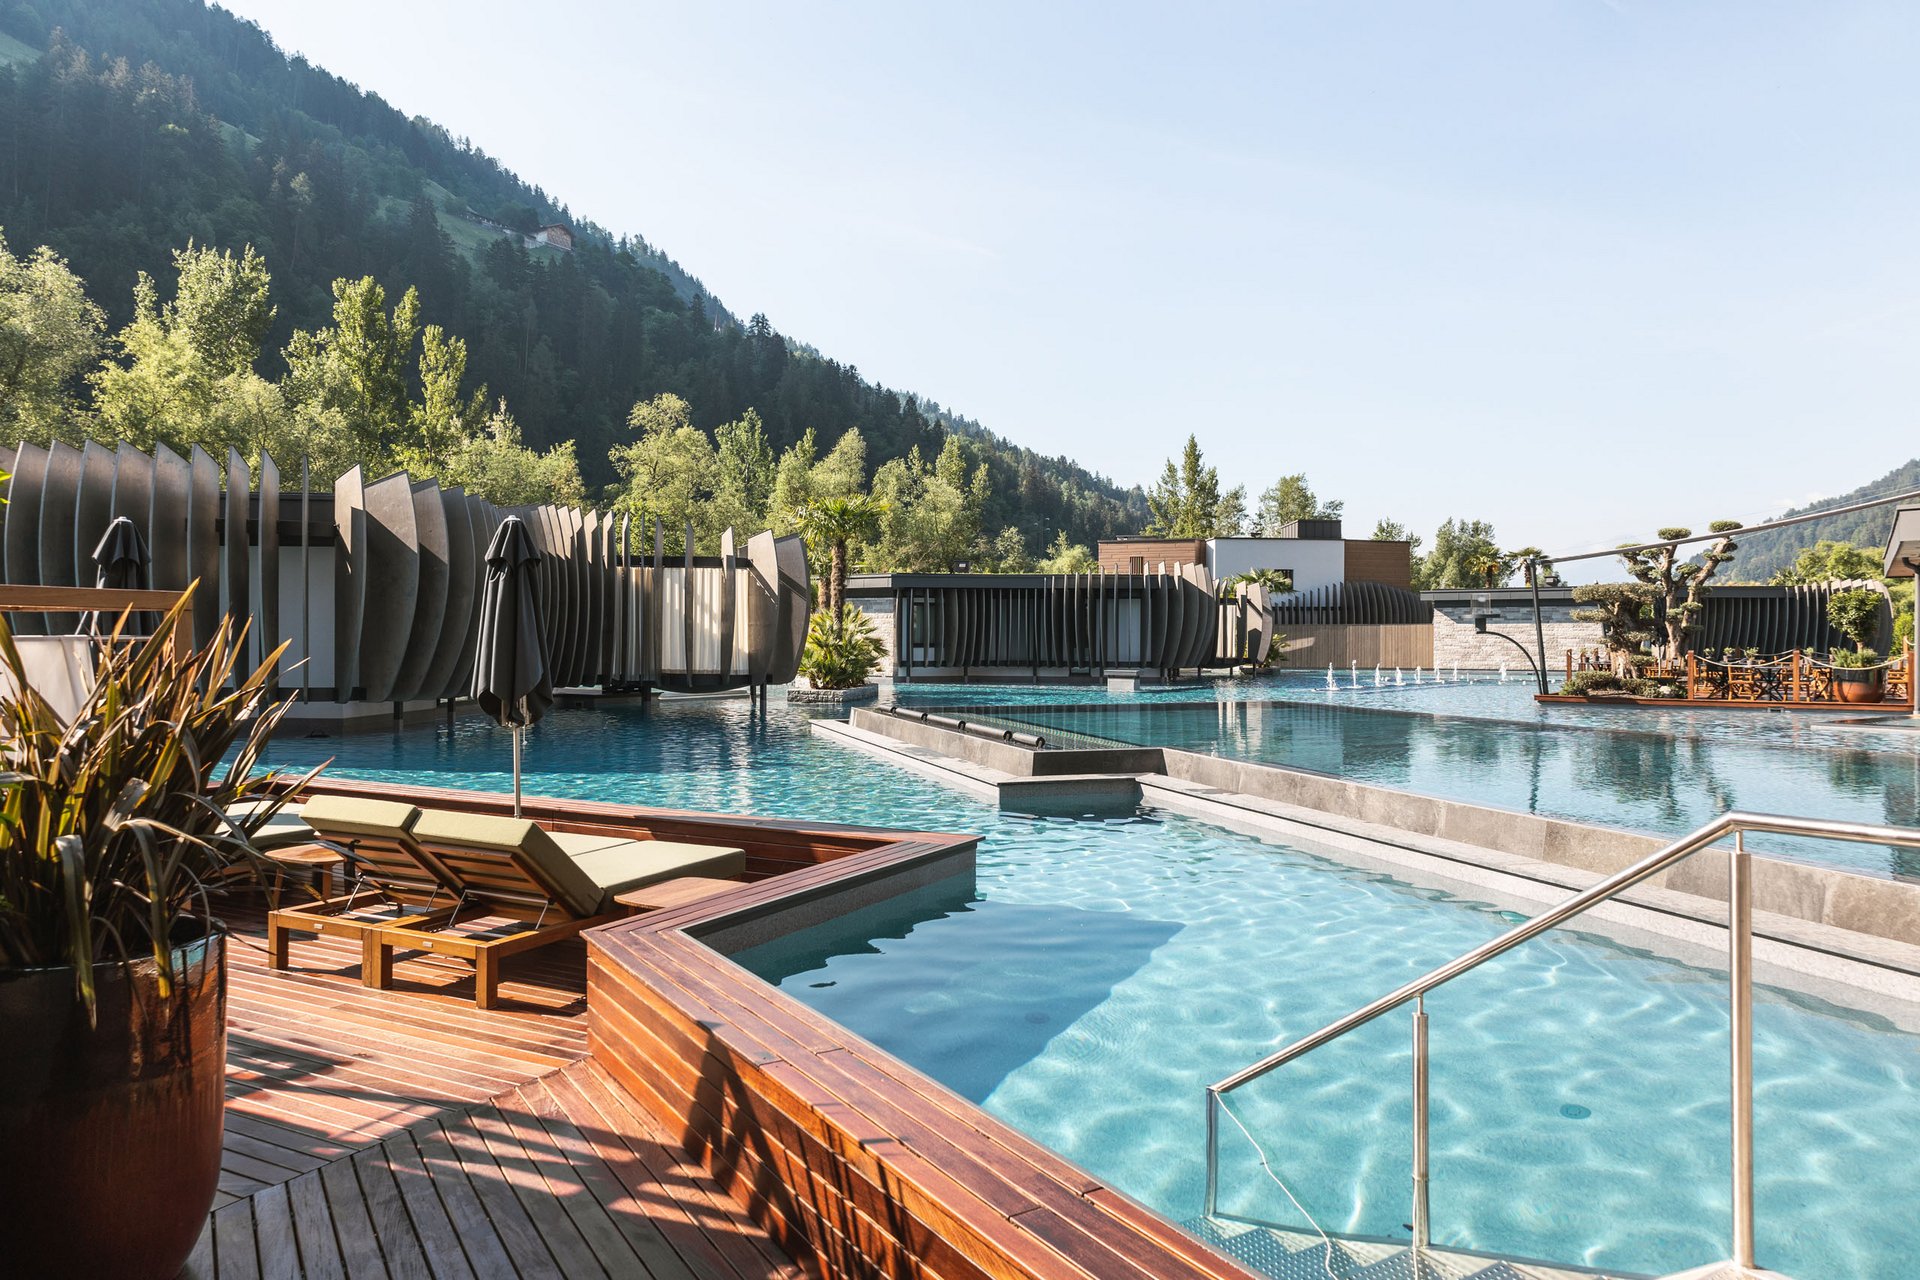 Umweltschutz im Hotel bei Meran in Südtirol